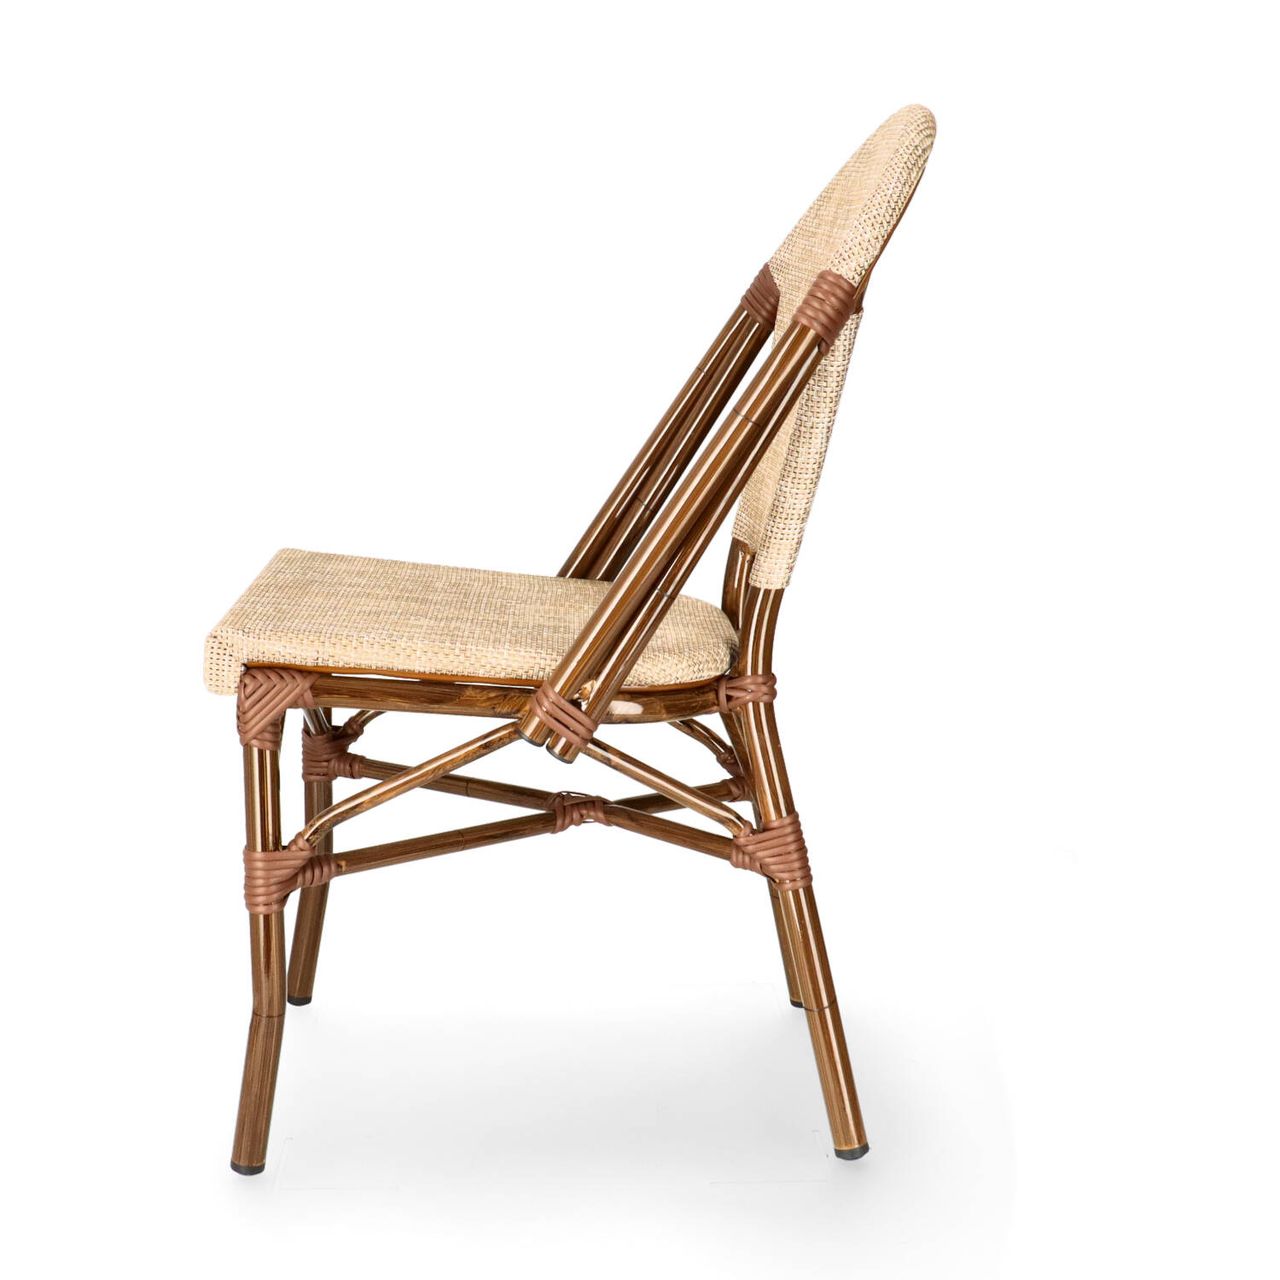 DL PARIS C Natúr design, klasszikus Tessil betétes kültéri szék